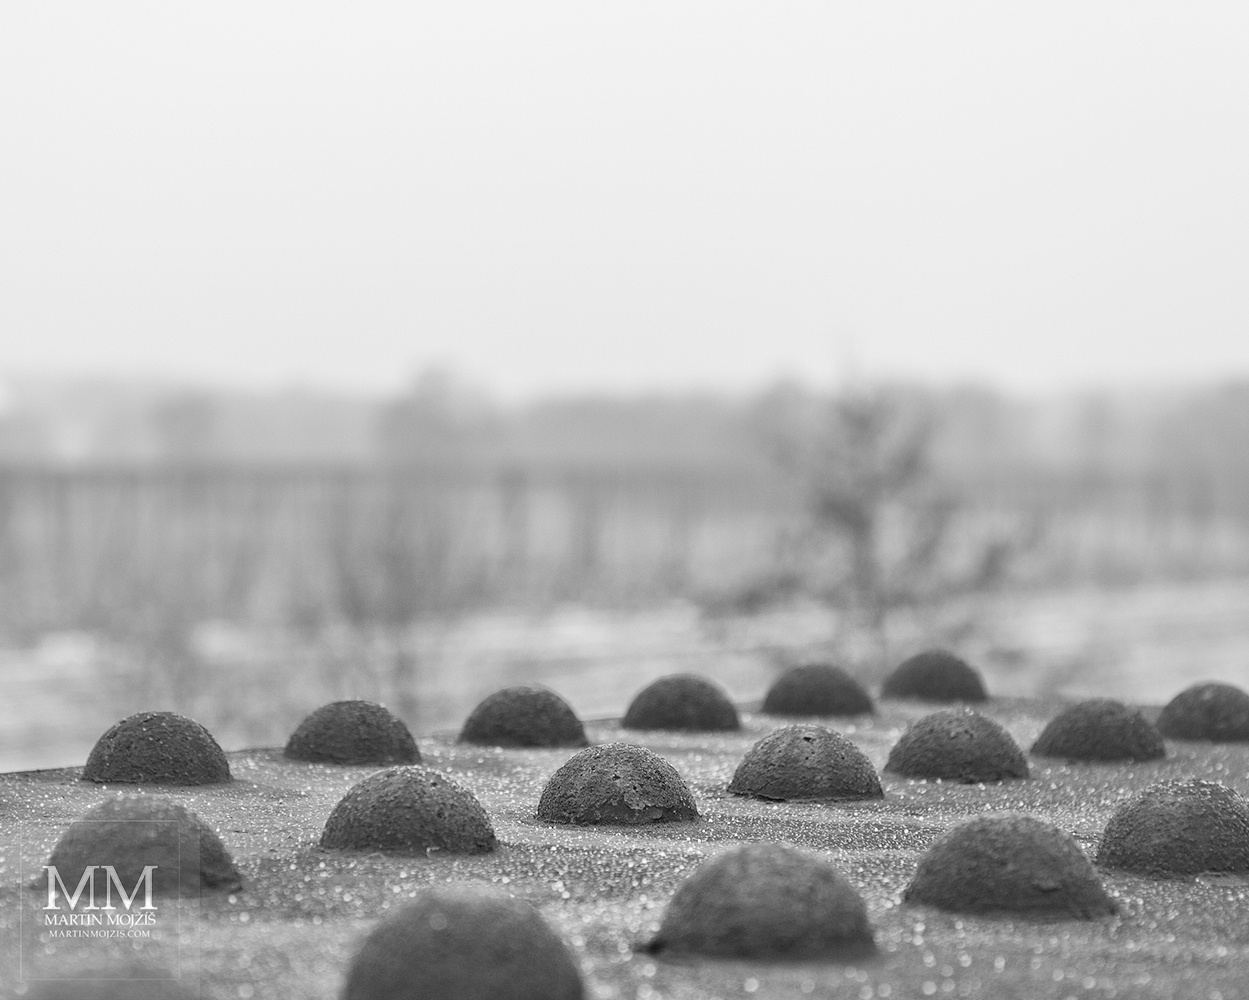 Nýty ocelového železničního mostu v pohledu zblízka. Umělecká černobílá fotografie Martina Mojžíše s názvem KRAJINY.